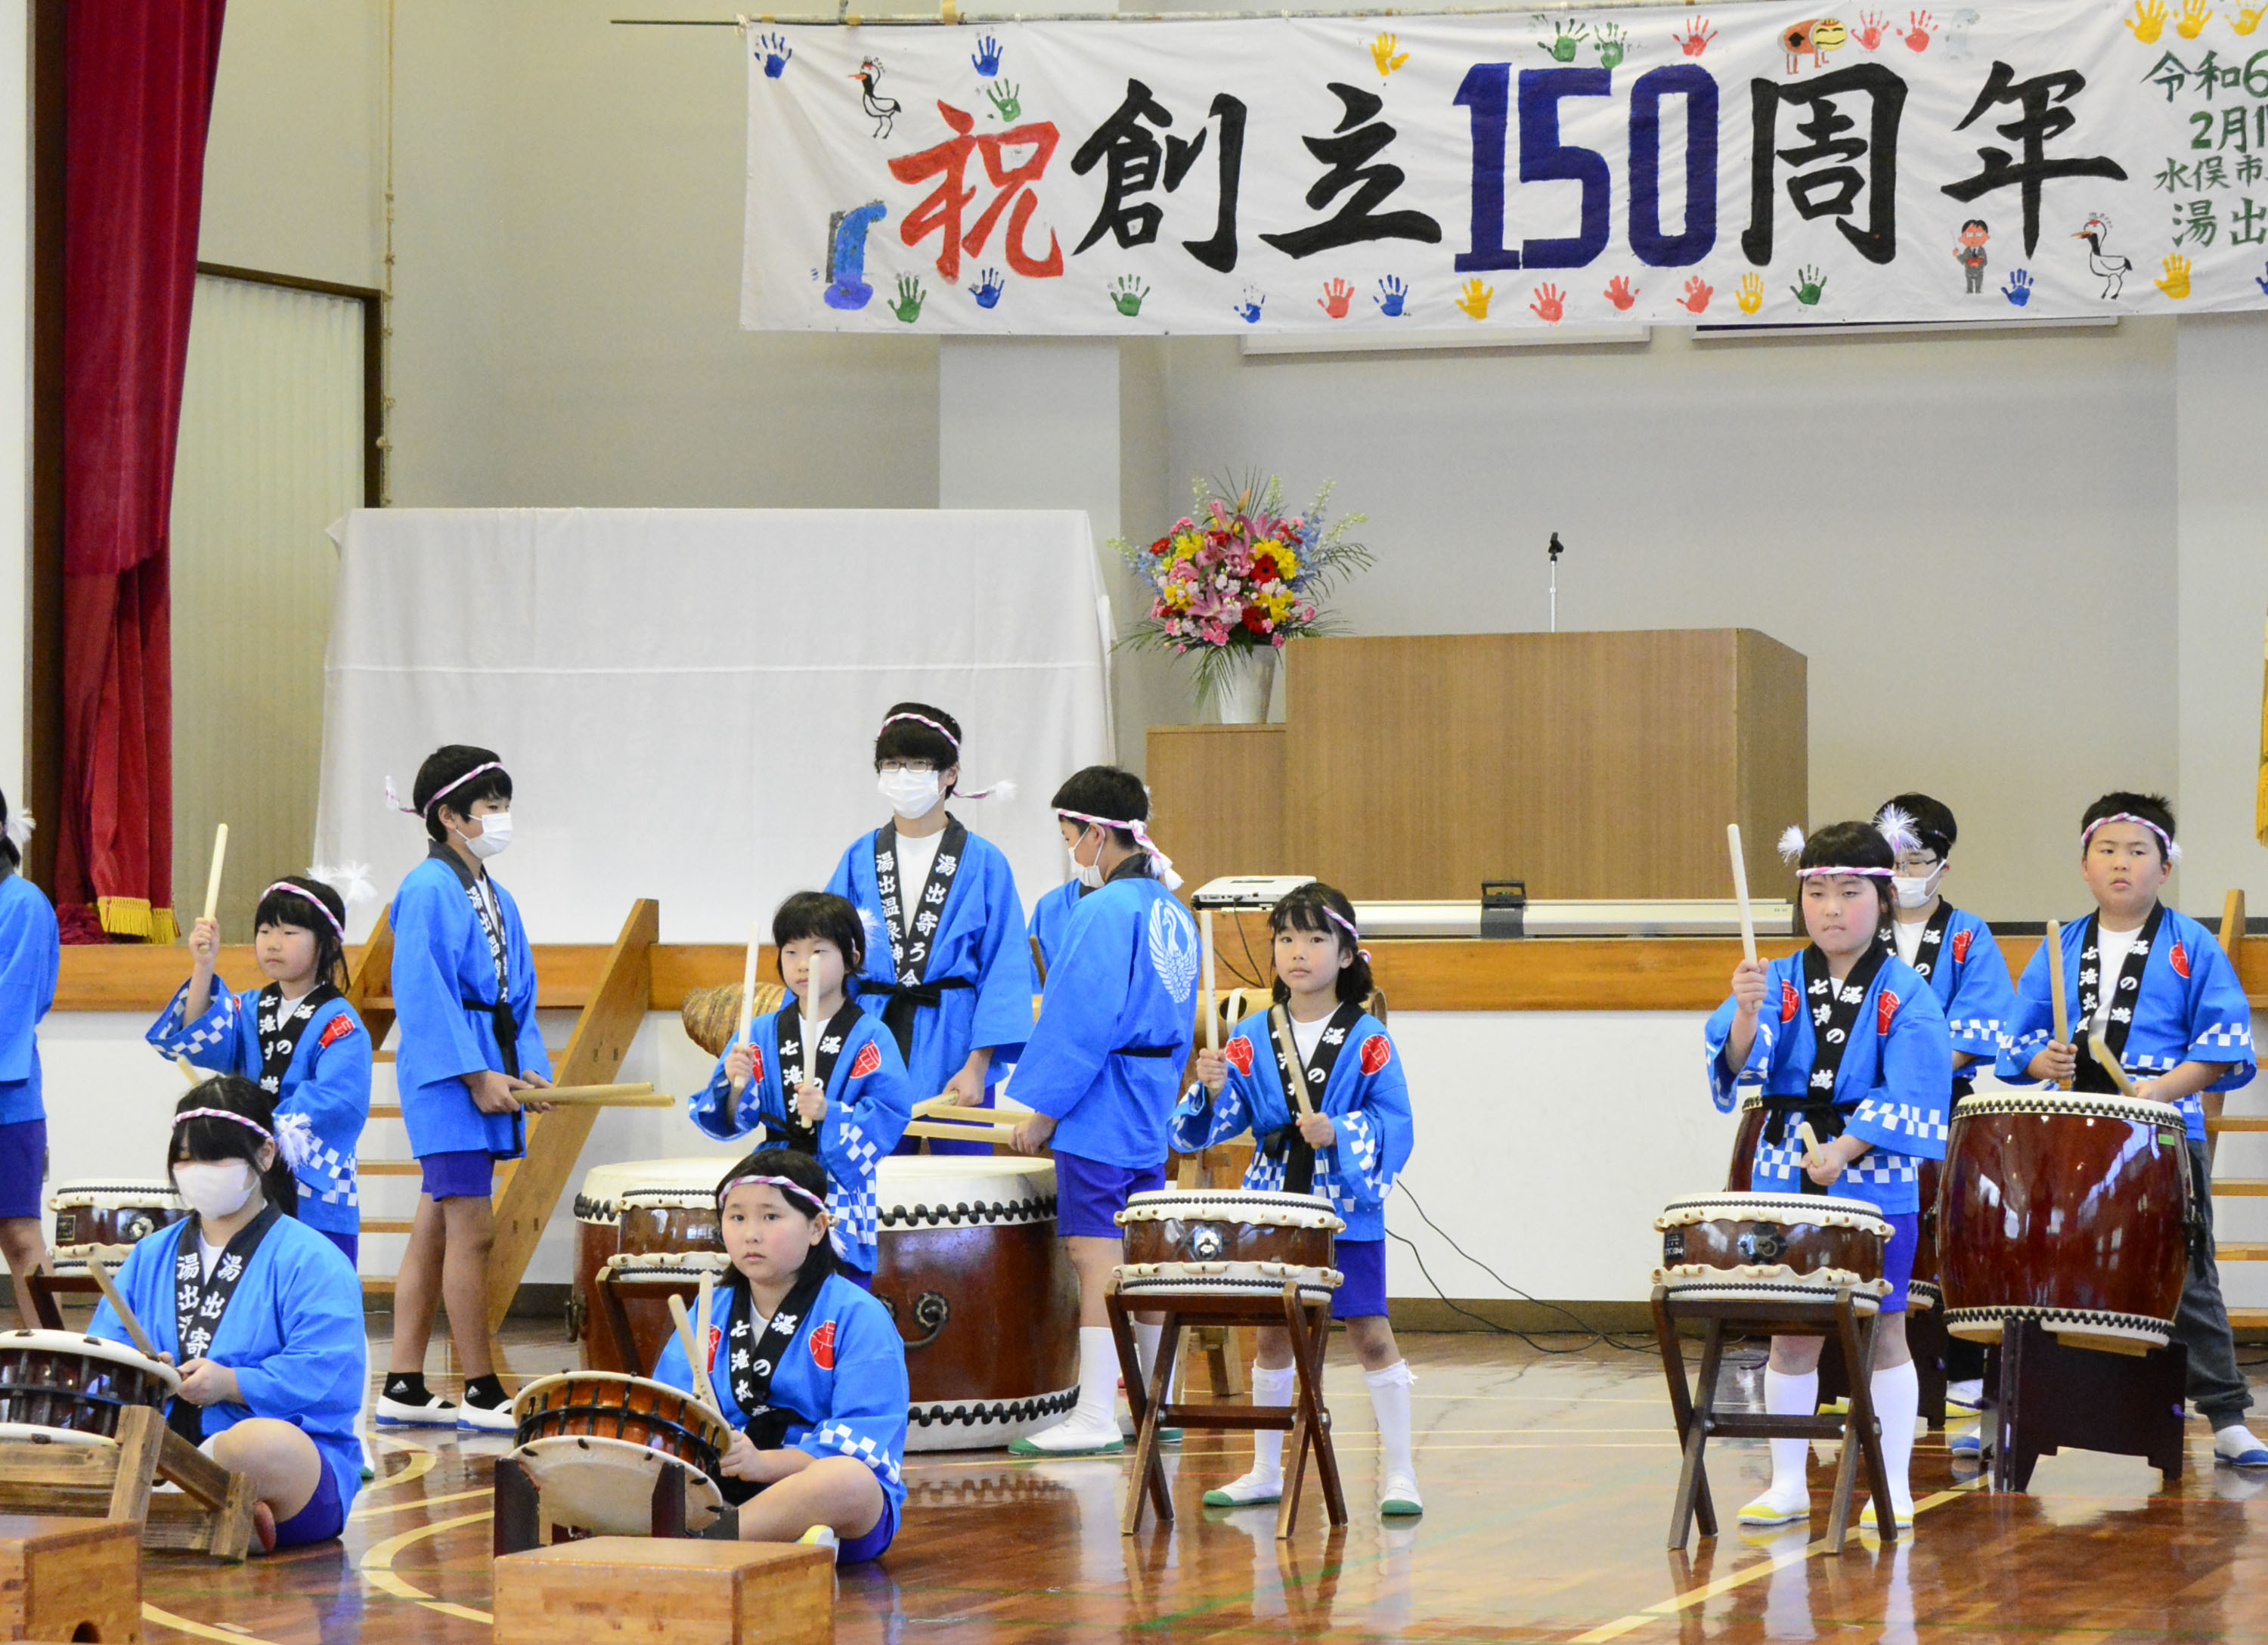 児童らによる伝統ある湯出七滝太鼓の演奏